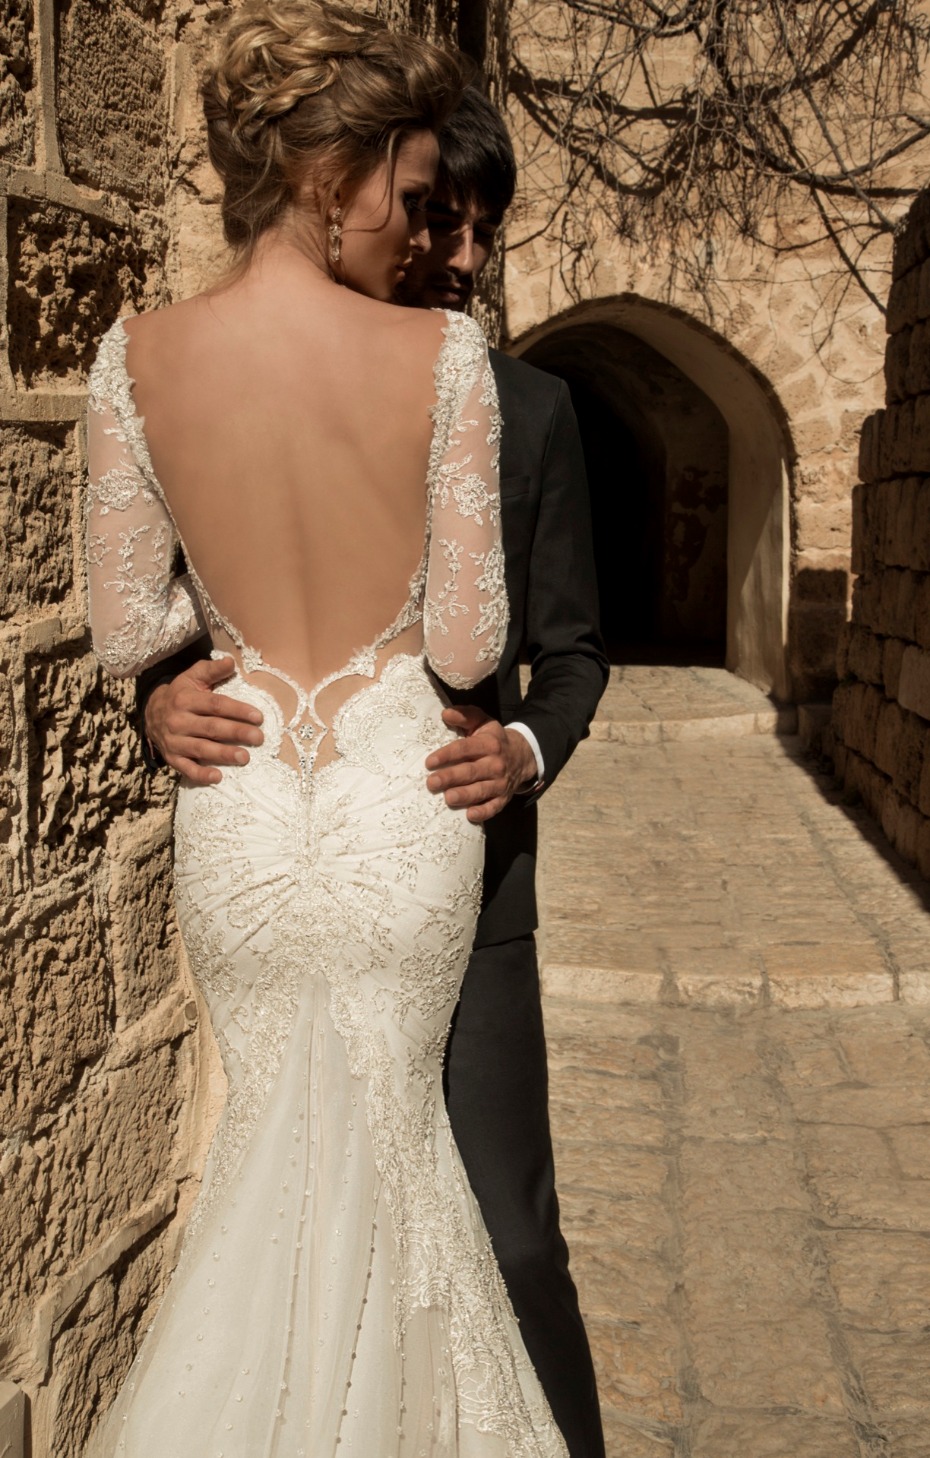 Galia Lahav wedding dress on sale